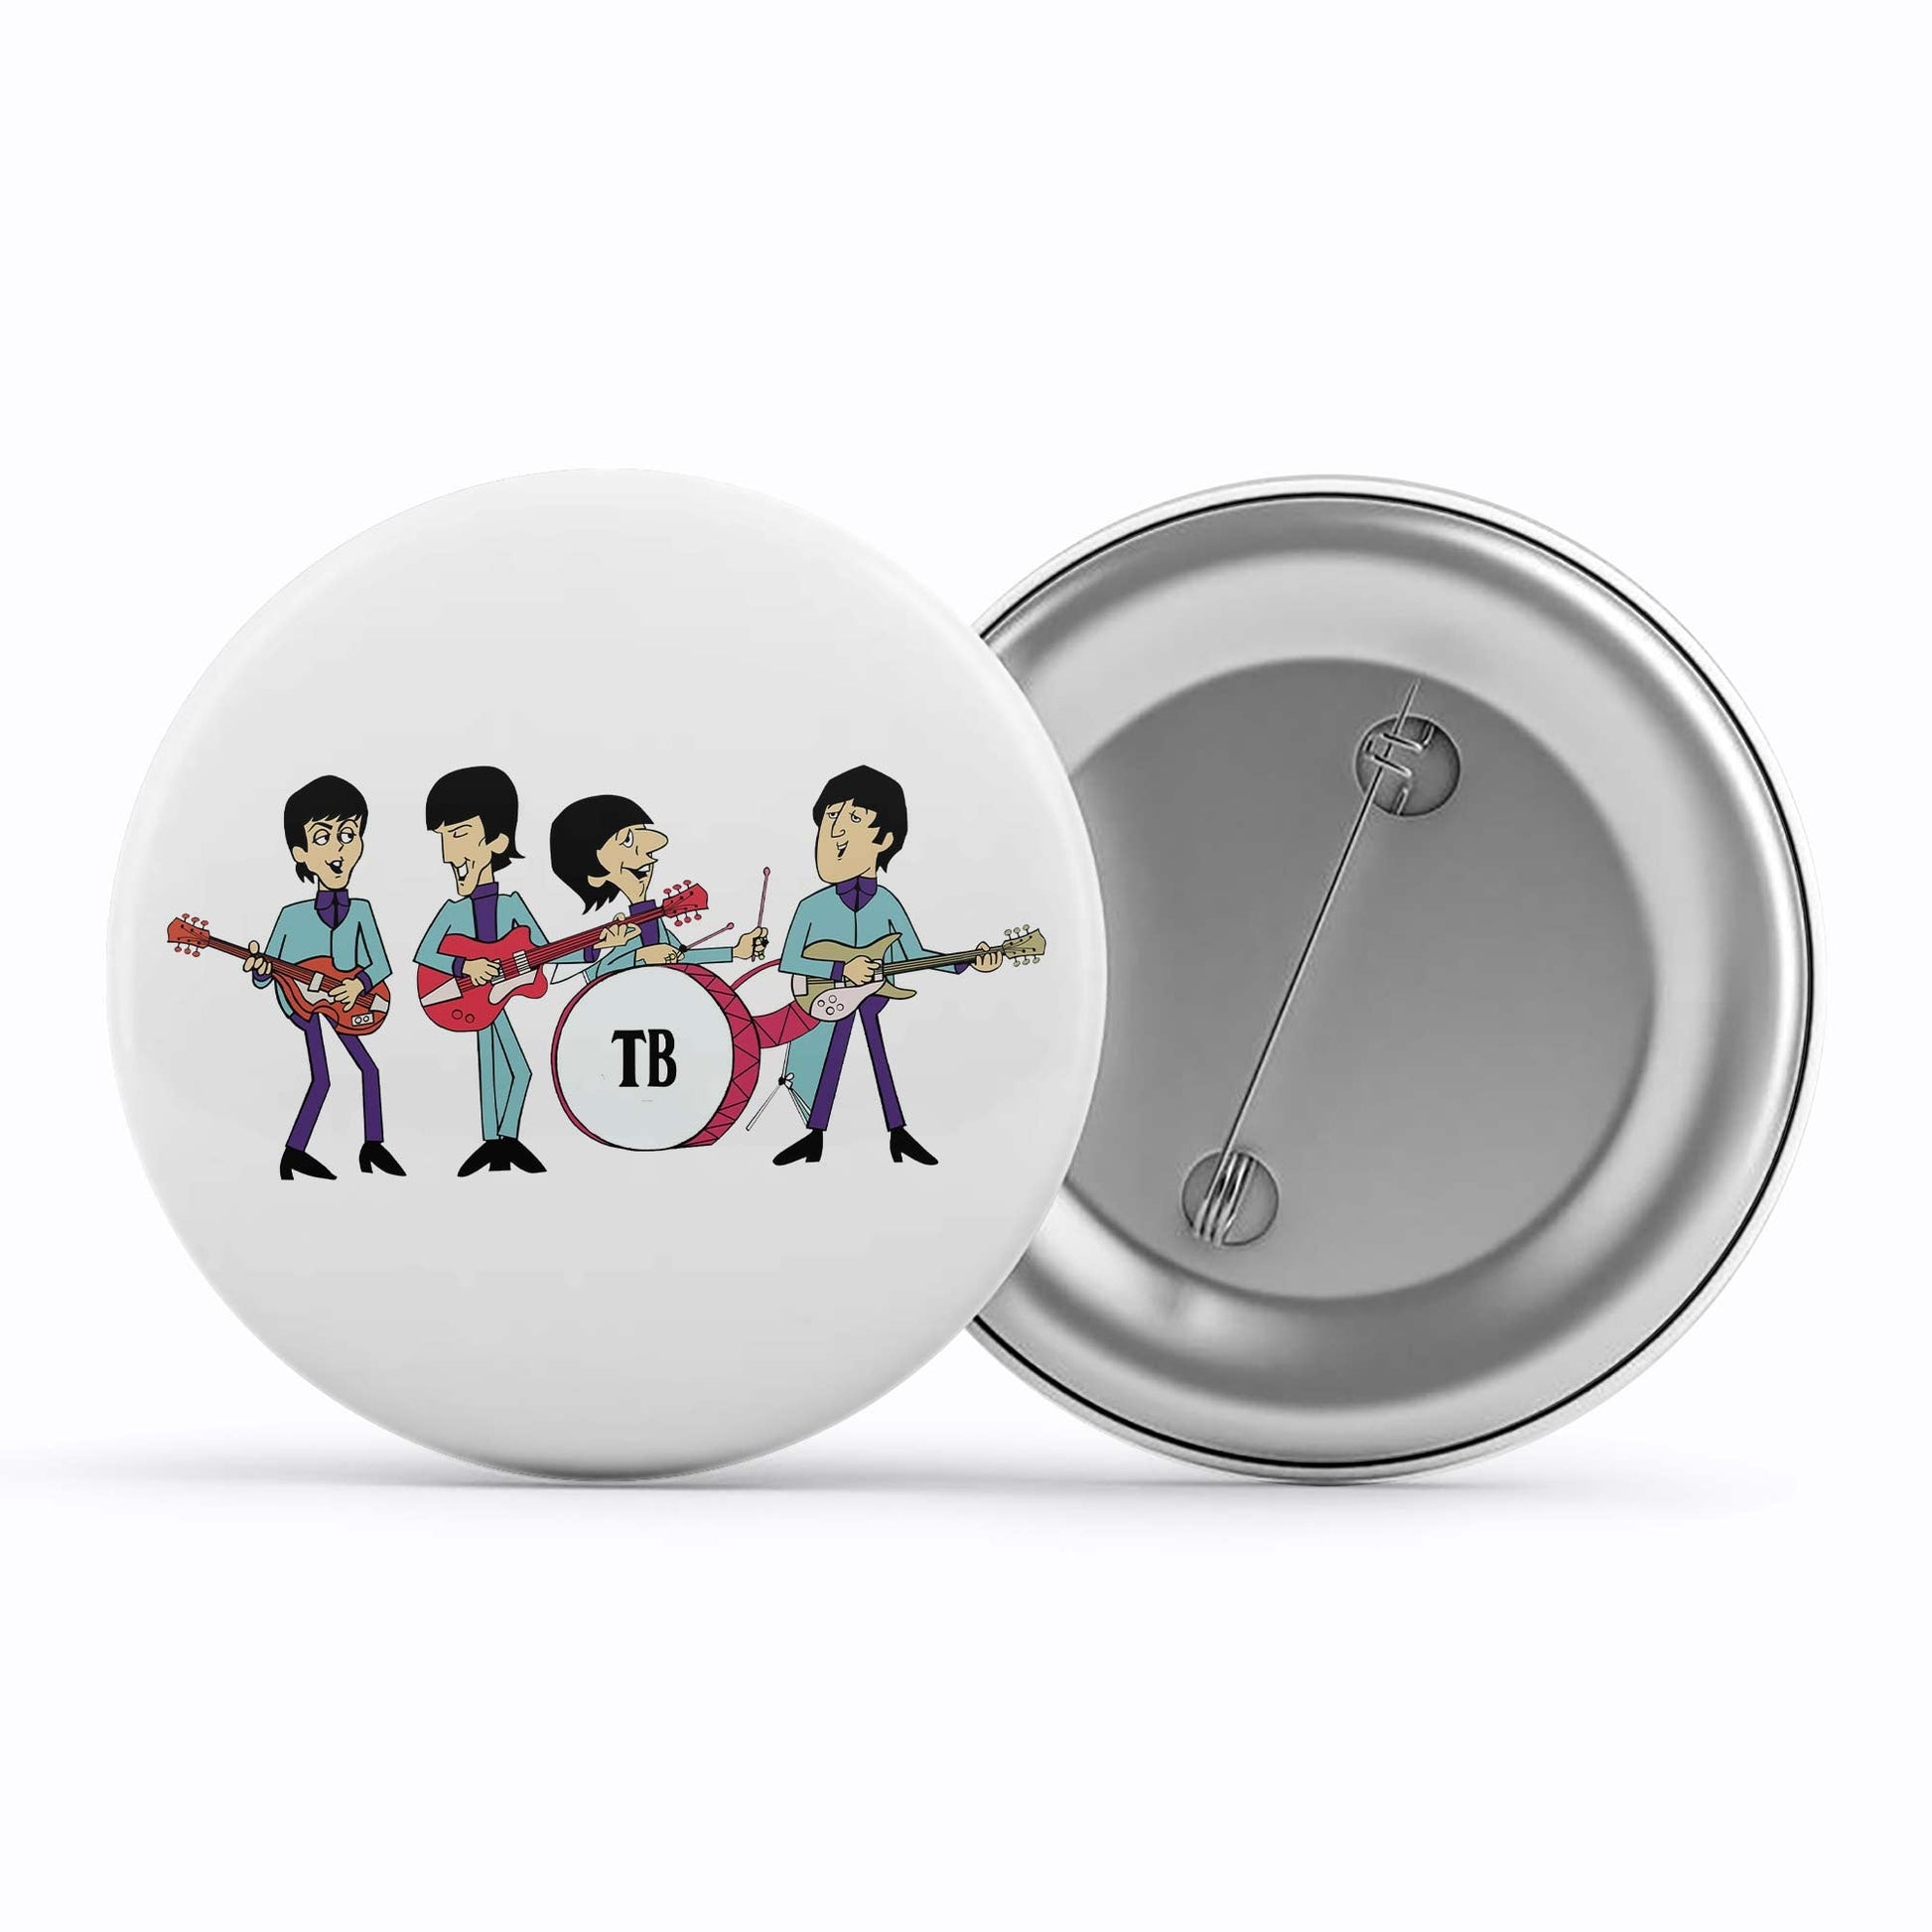 The Beatles Badge Metal Pin Button The Banyan Tee TBT